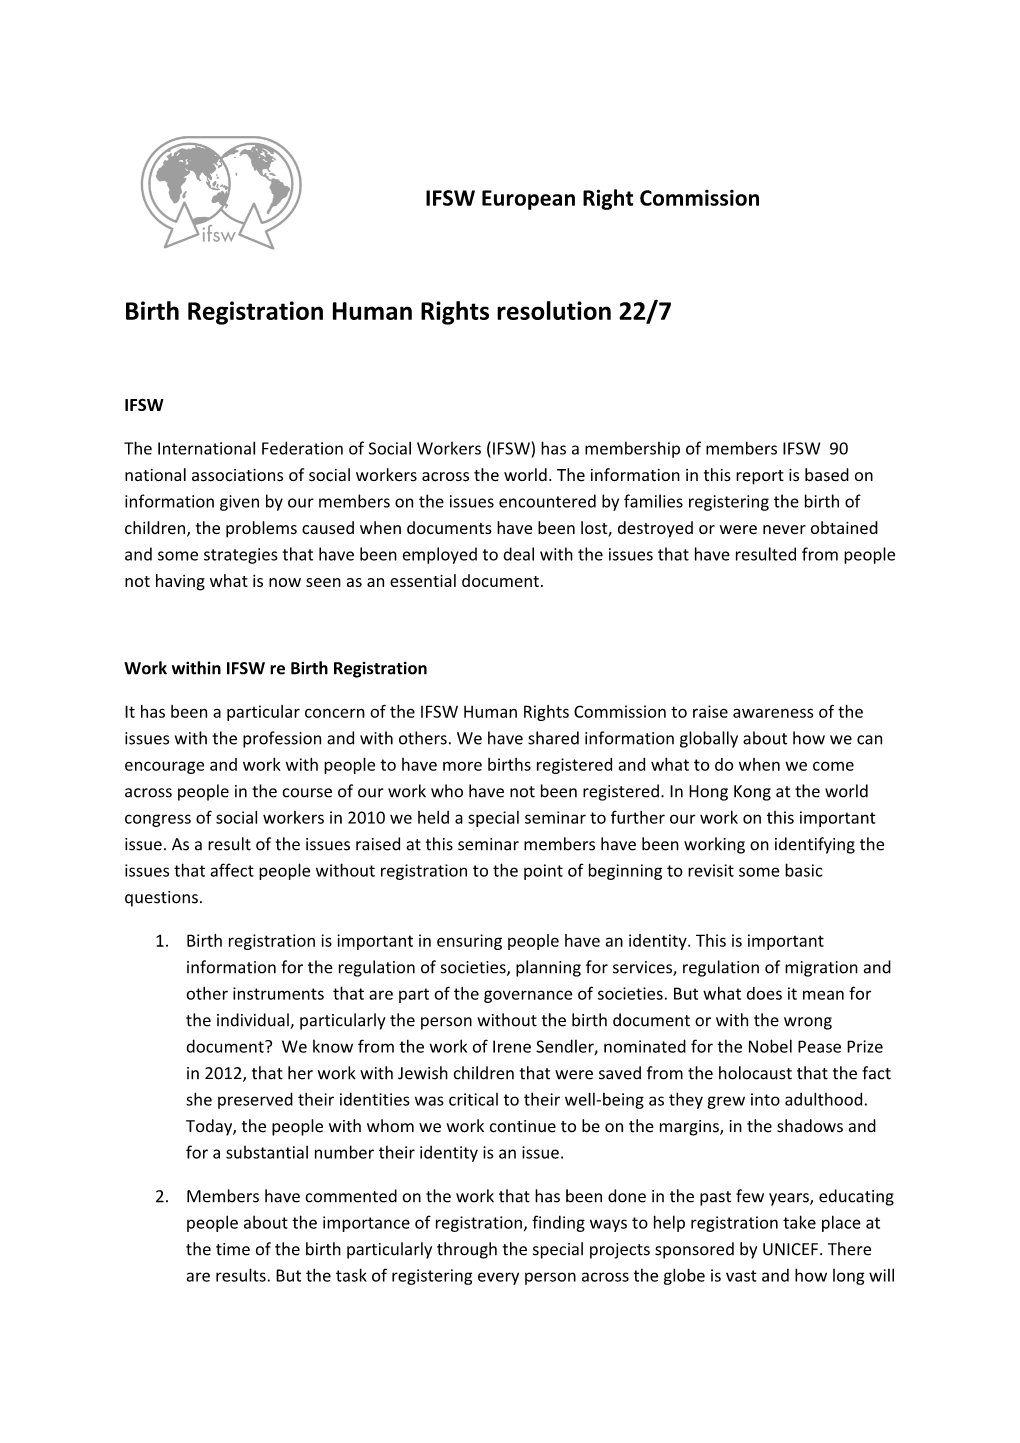 Birth Registration Human Rights Resolution 22/7